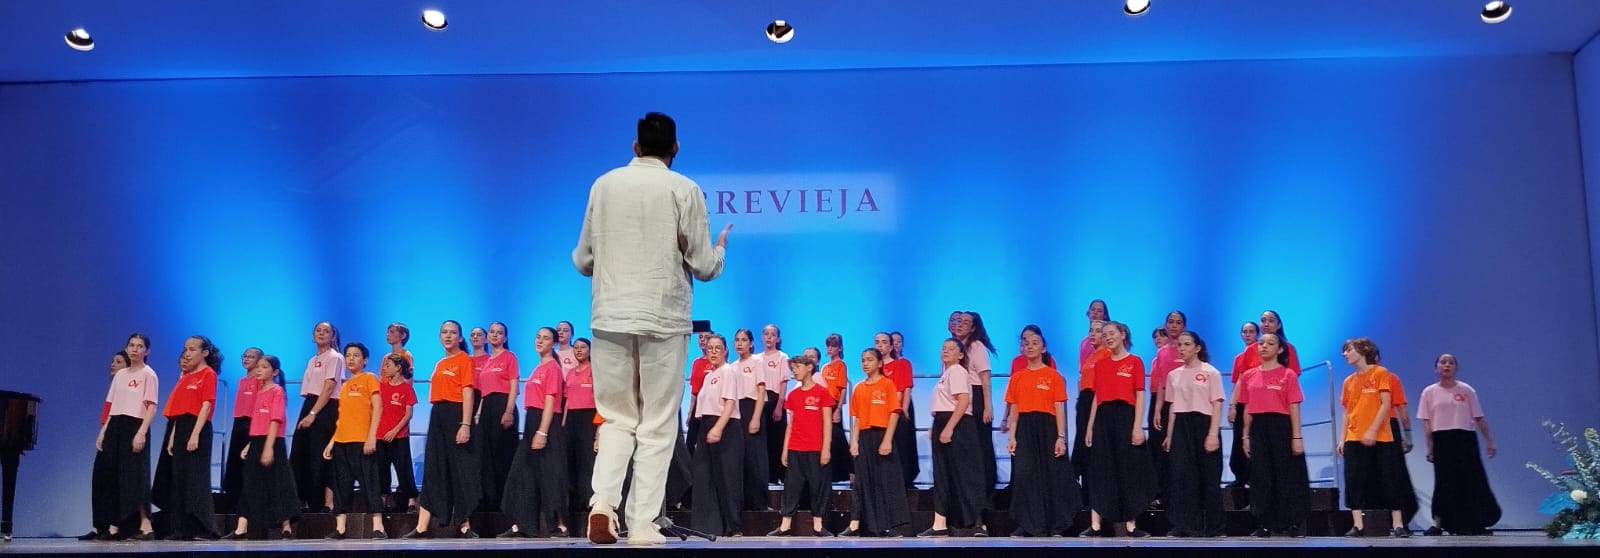 El Coro Las Veredas, durante su actuación en Torrevieja